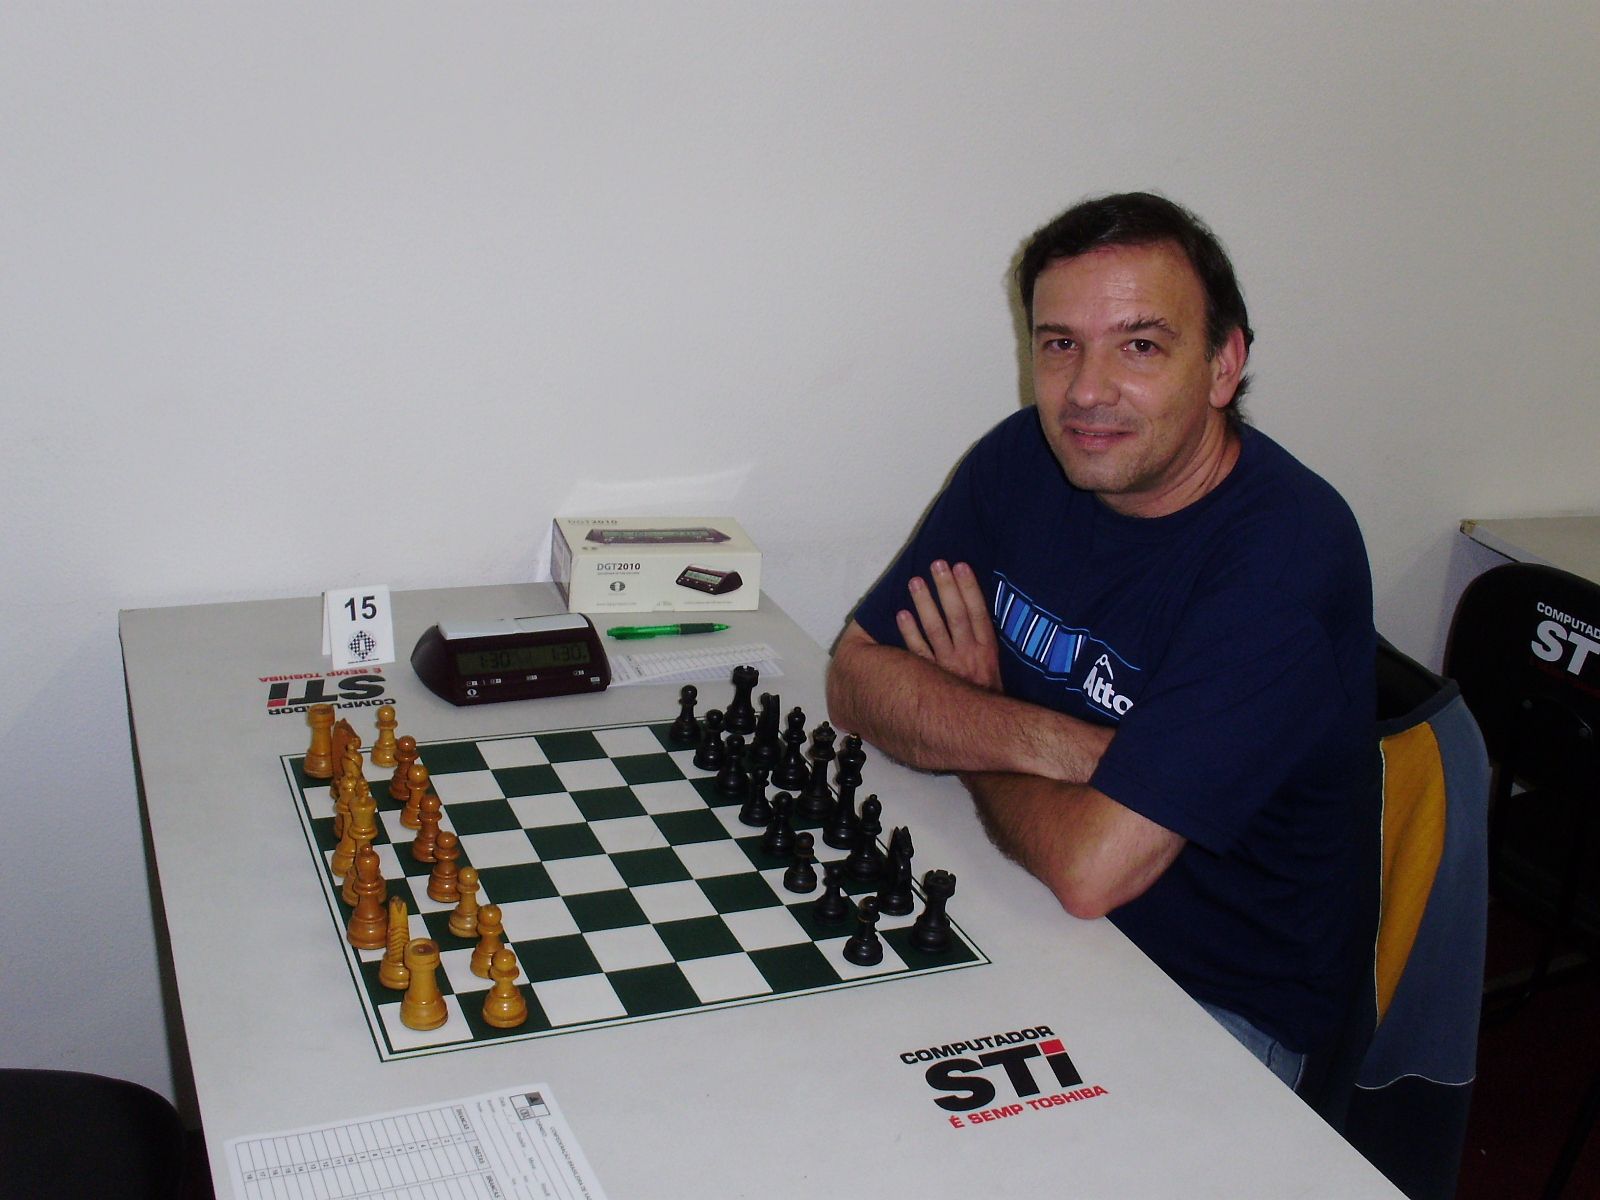 Léo - Curitiba,Paraná: Aulas de xadrez em Curitiba e apoio psicopedagógico  com professor de xadrez